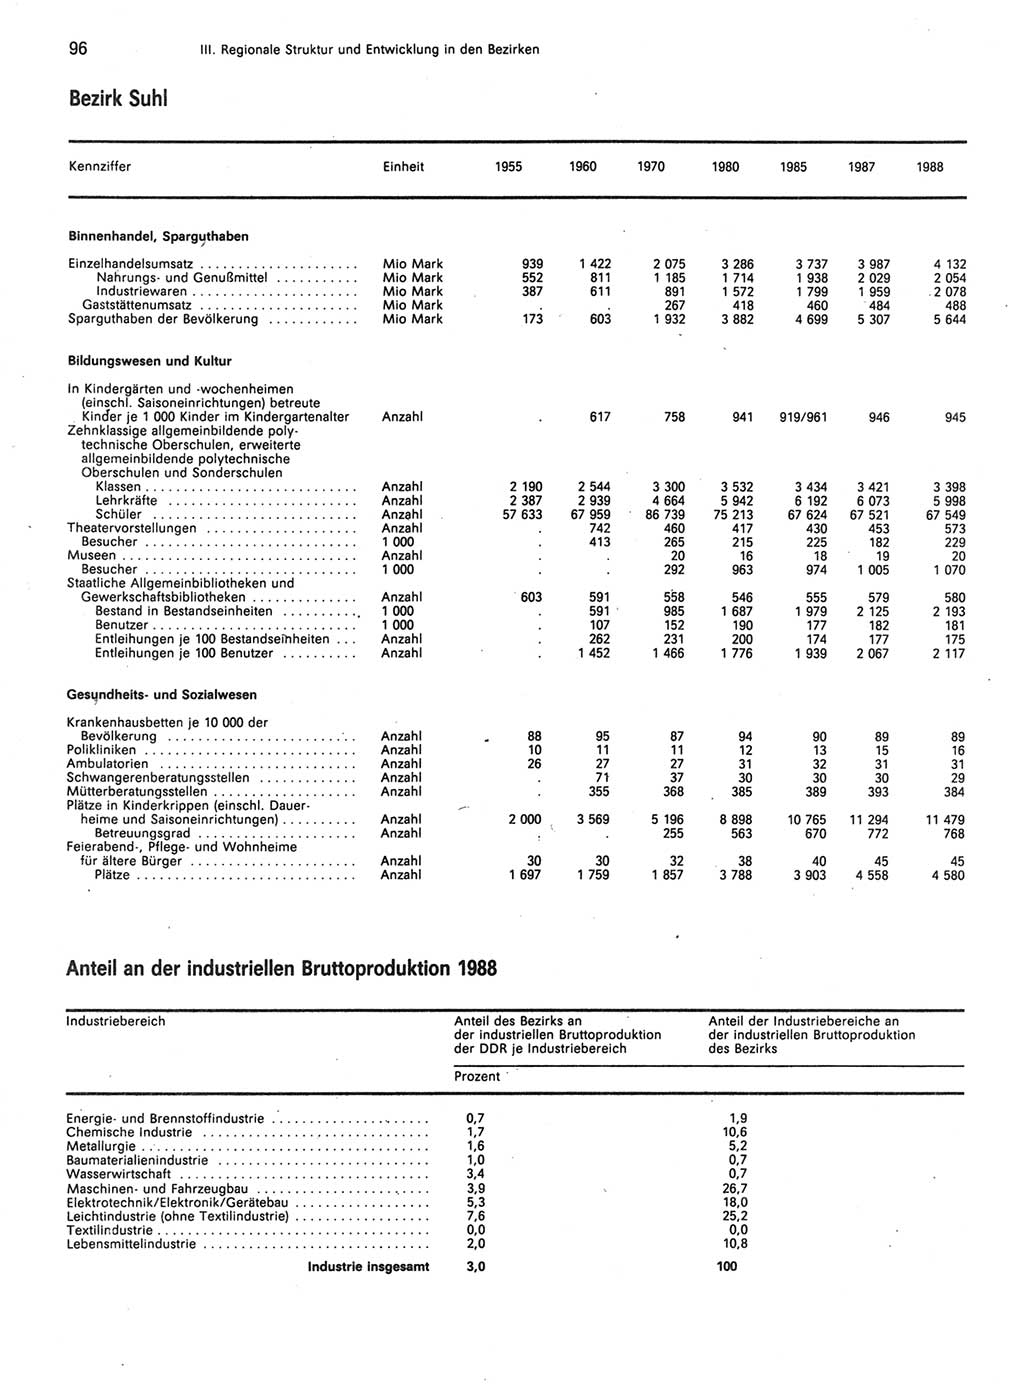 Statistisches Jahrbuch der Deutschen Demokratischen Republik (DDR) 1989, Seite 96 (Stat. Jb. DDR 1989, S. 96)